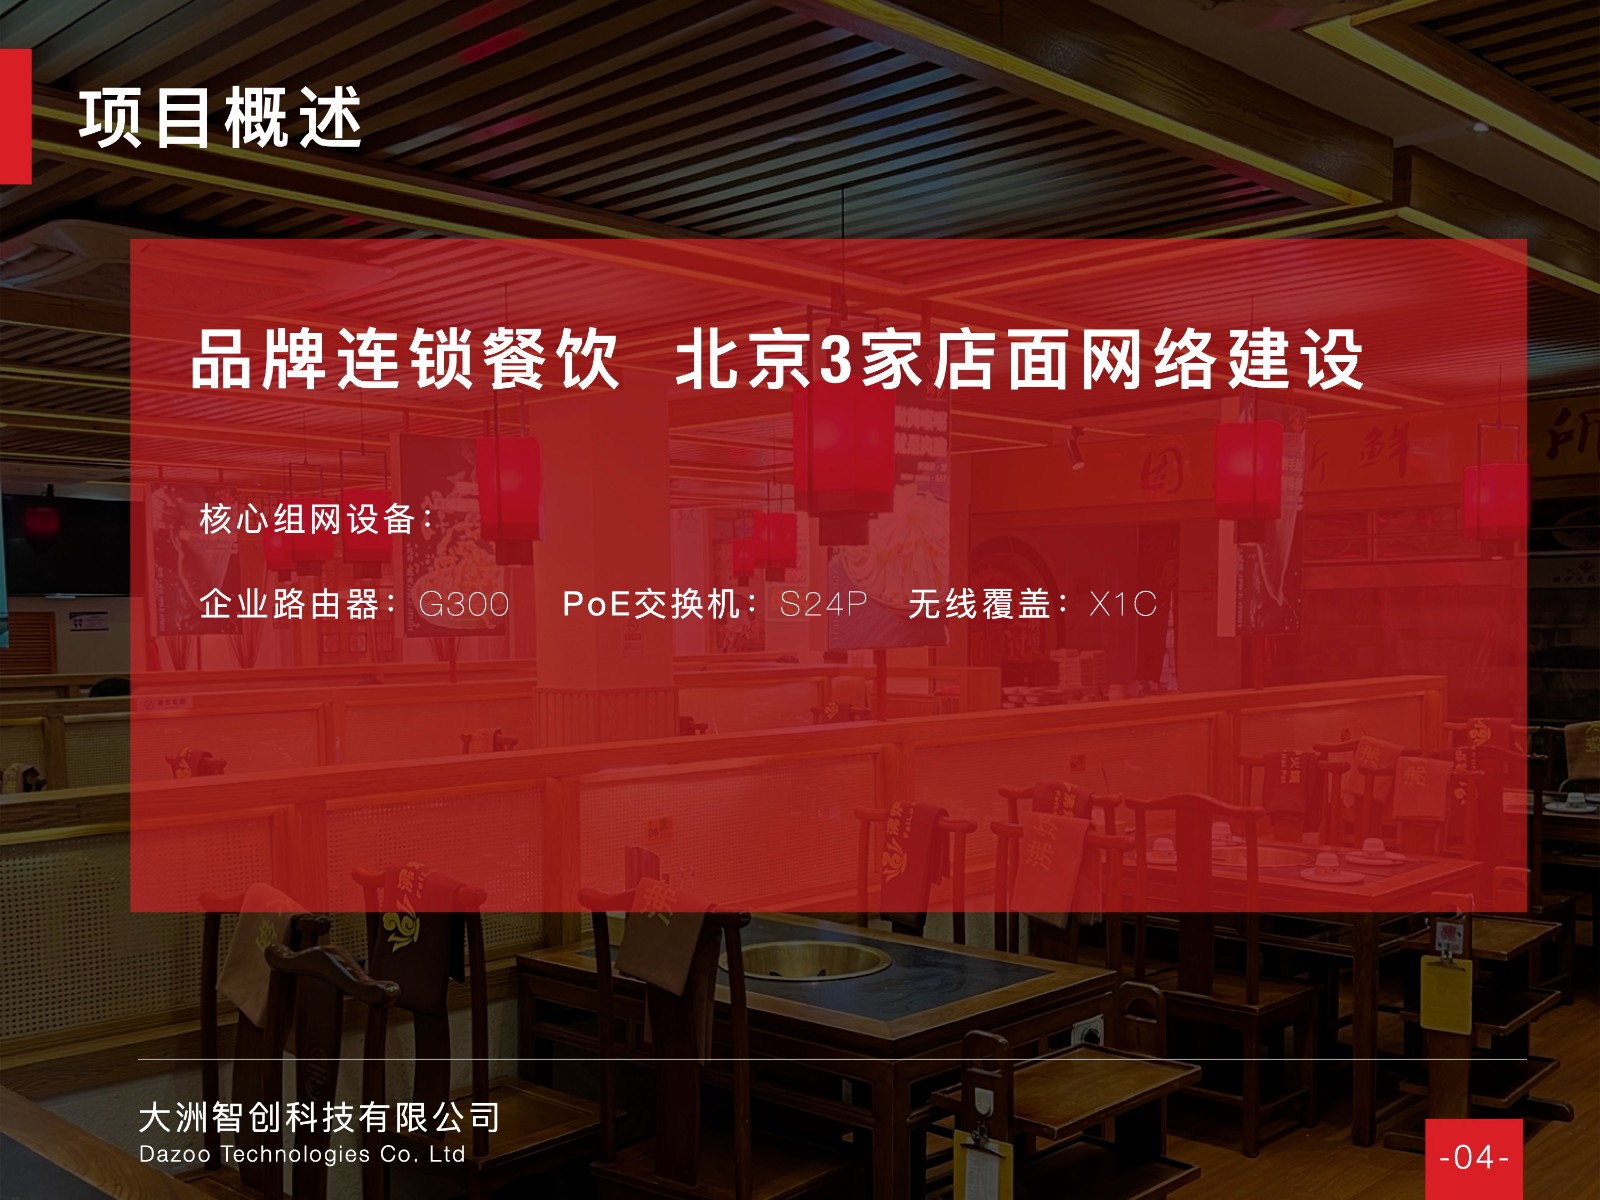 连锁案例 - 连锁餐饮品牌沸炉火锅，北京3家门店网络升级改造